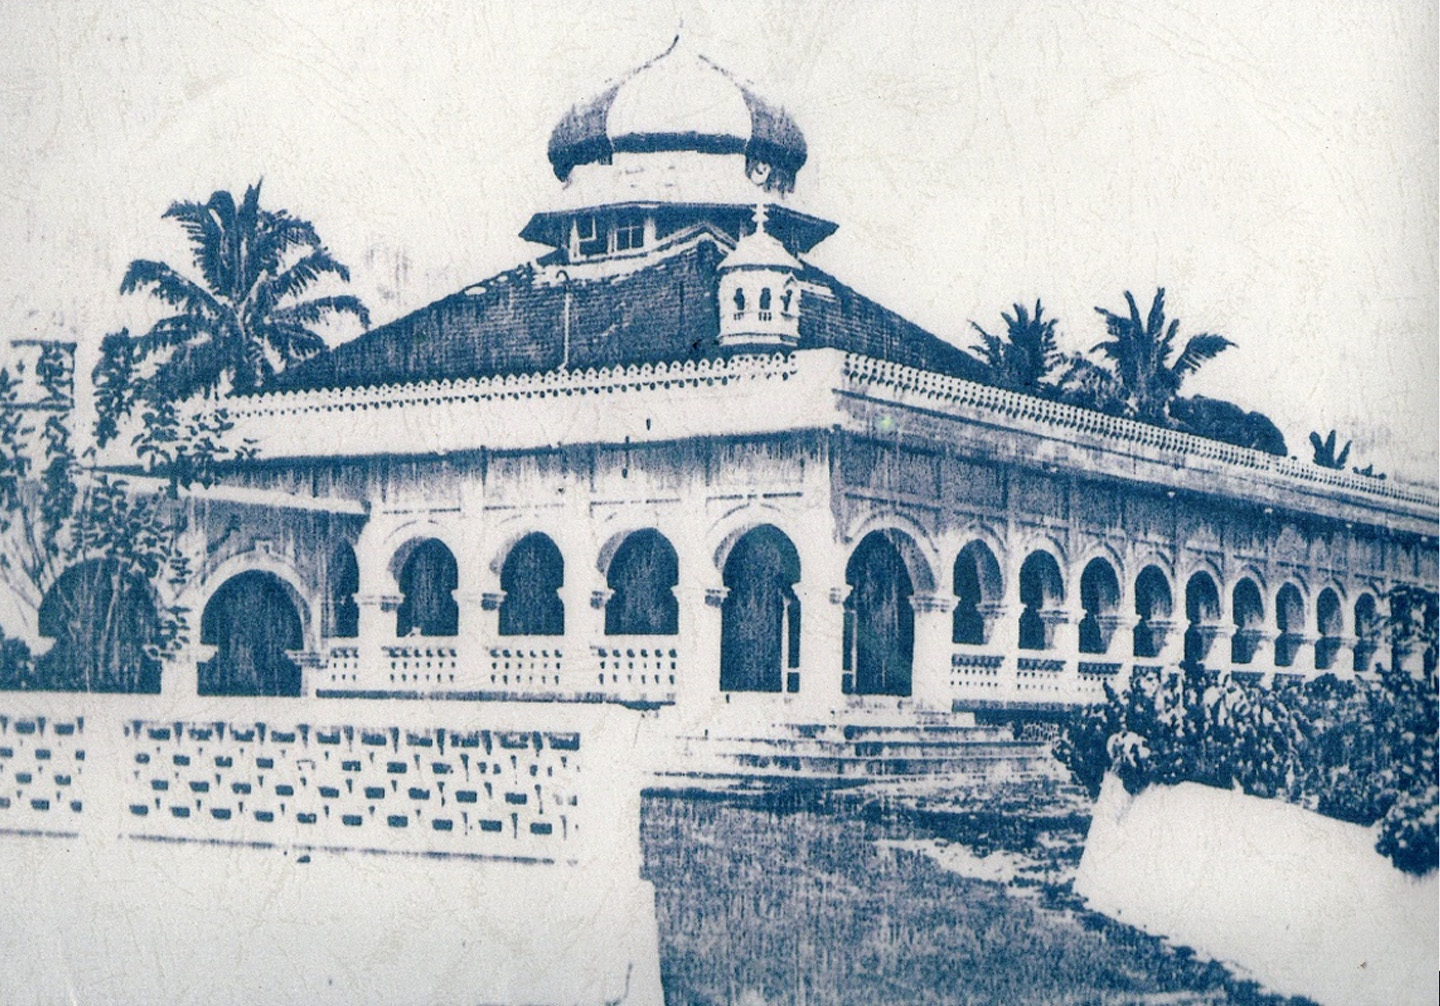 Masjid Raya Pekanbaru yang awalnya bernama Mesjid Senapelan ini dibangun kali pertama oleh Sultan Abdul Jalil Muazzam Syah (1766-1780), Raja keempat Kerajaan Siak Sri Indrapura, sekitar 1762 M. Terletak di Jalan Masjid No.13, Kampung Bandar, Desa Payung Sekaki, Kecamatan Senapelan, Kota Pekanbaru.